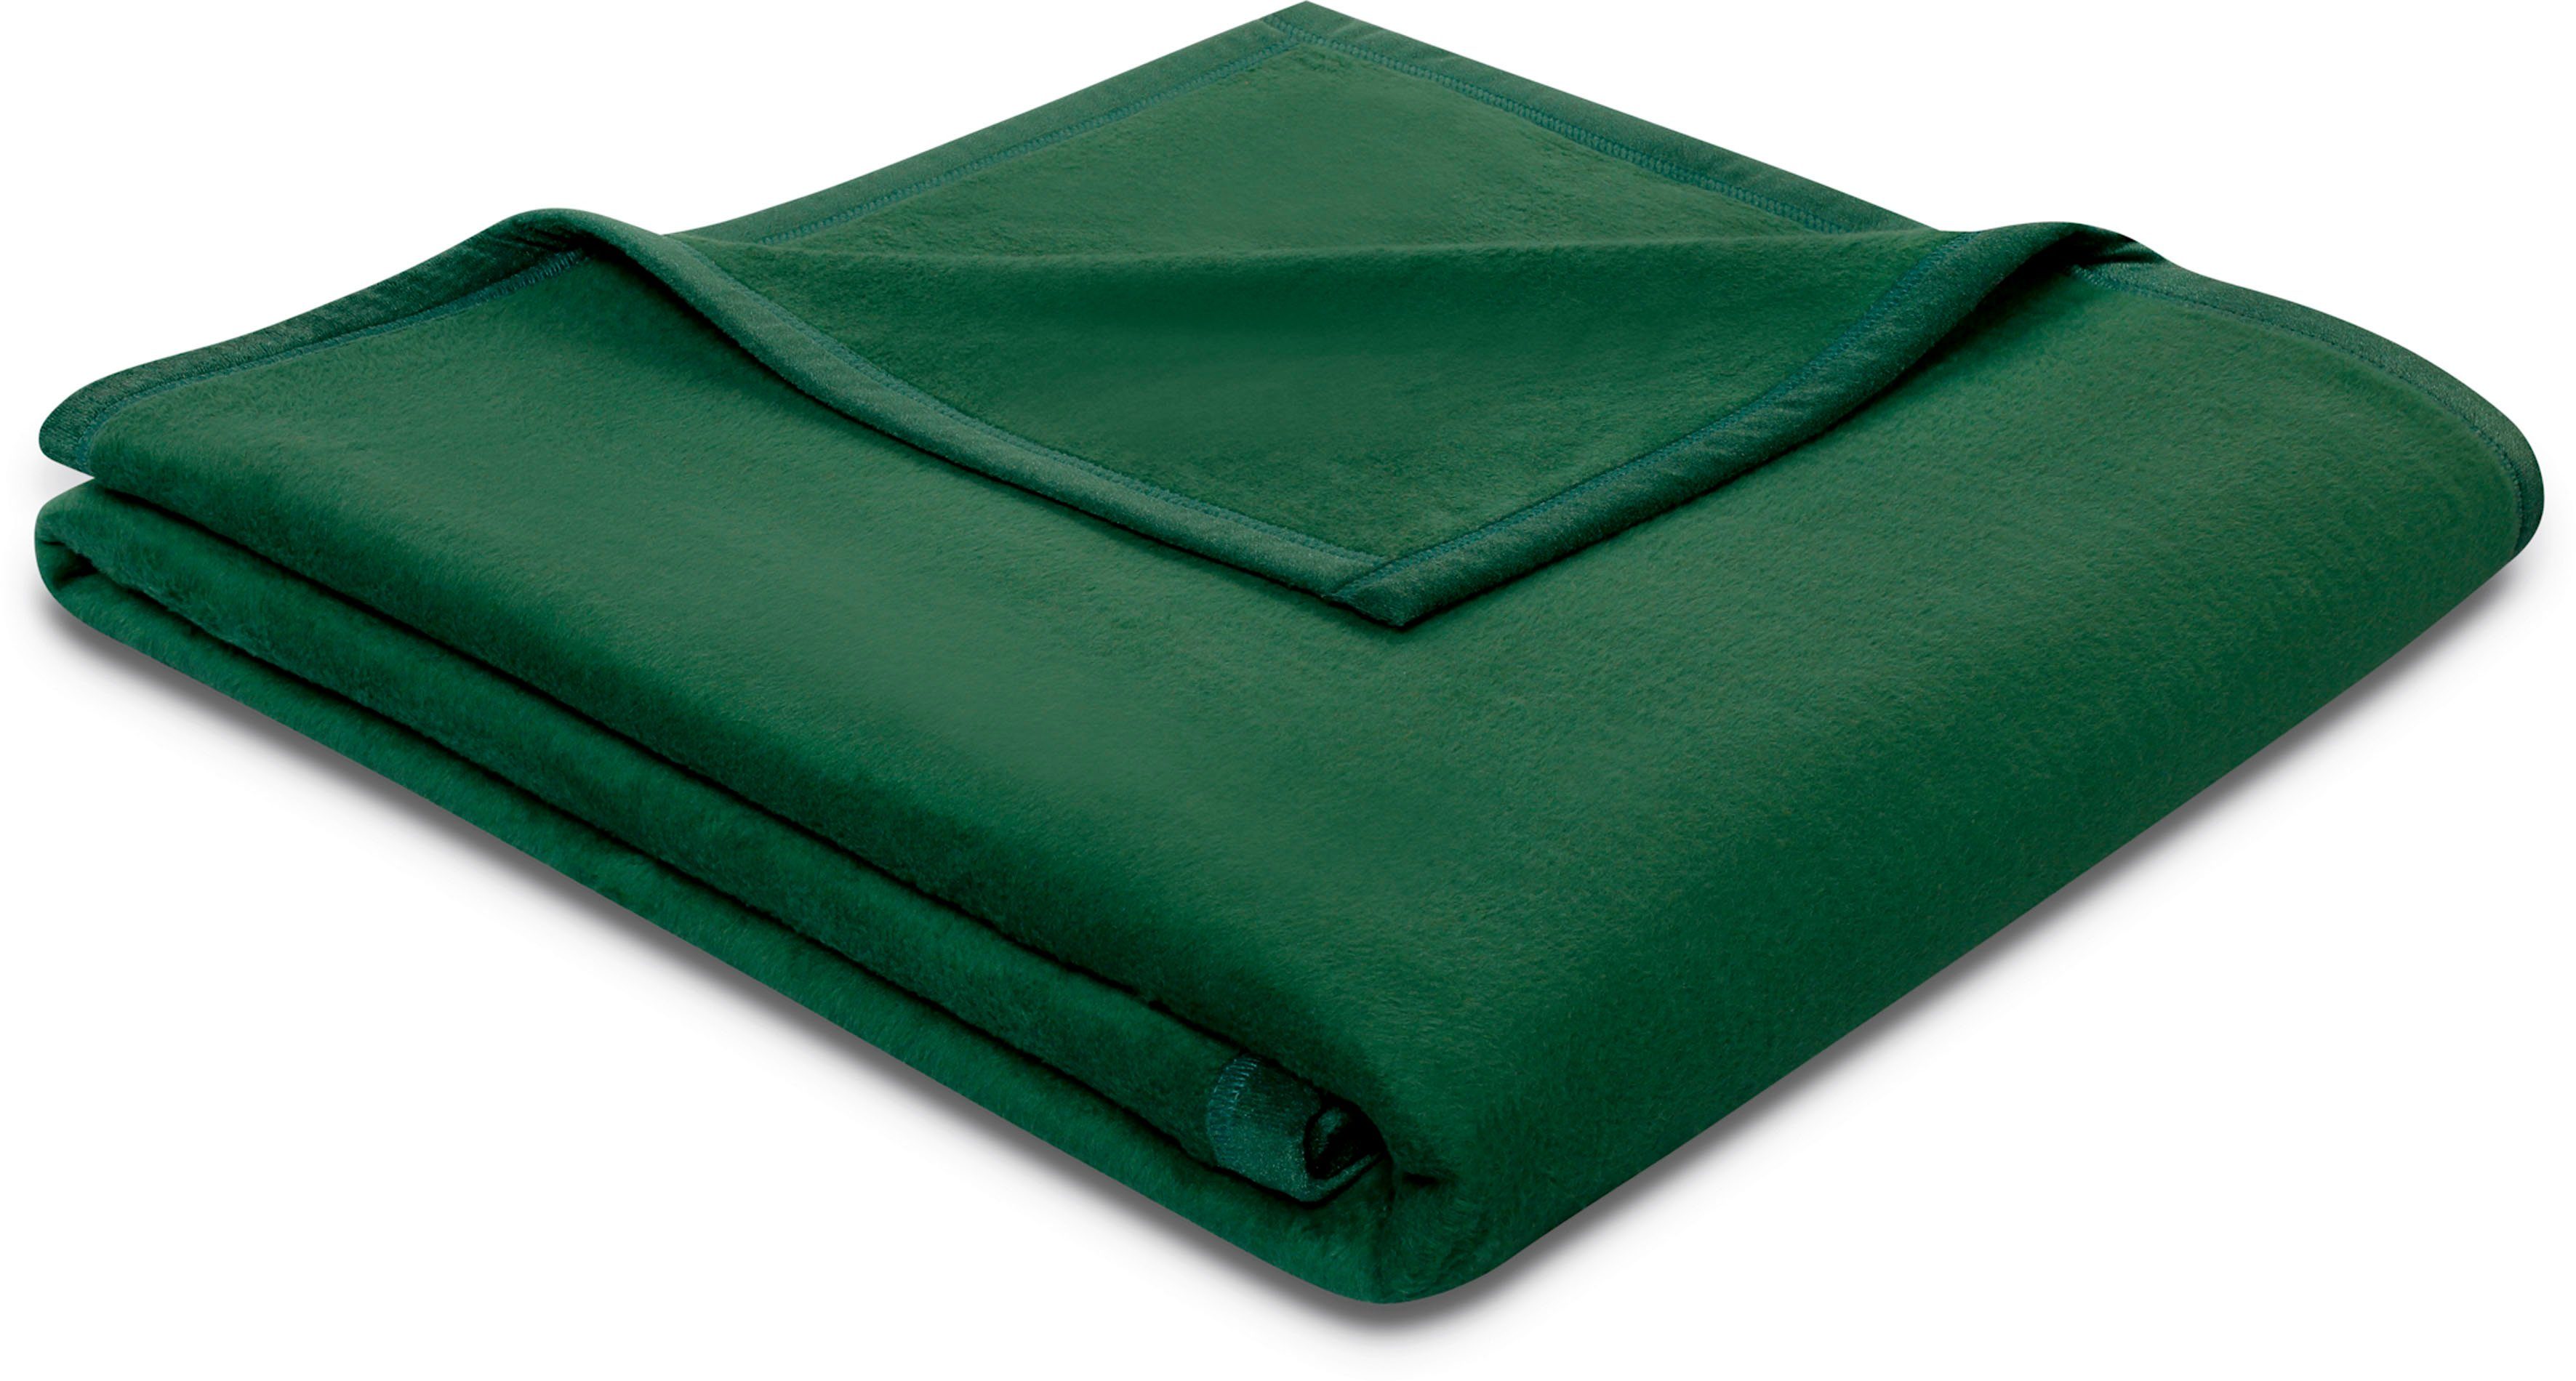 Wohndecke Cotton Sense, Biederlack, aus 100% Baumwolle grün